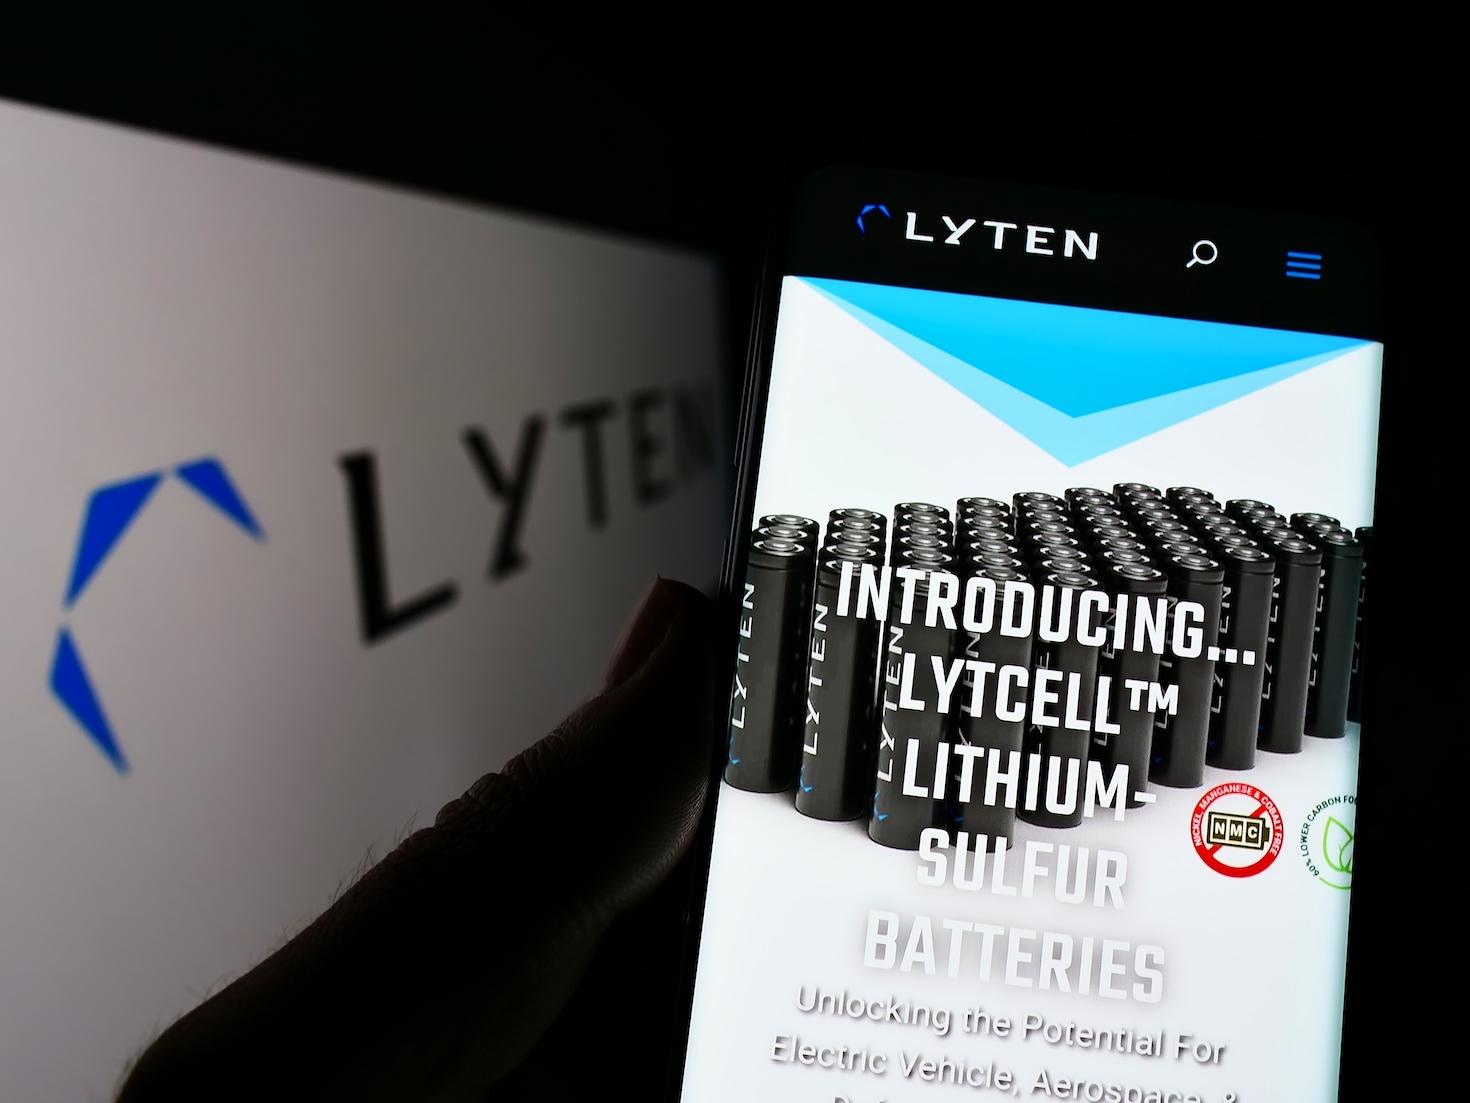 前景中的Lyten网站的移动视图；背景中的Lyten徽标/标志